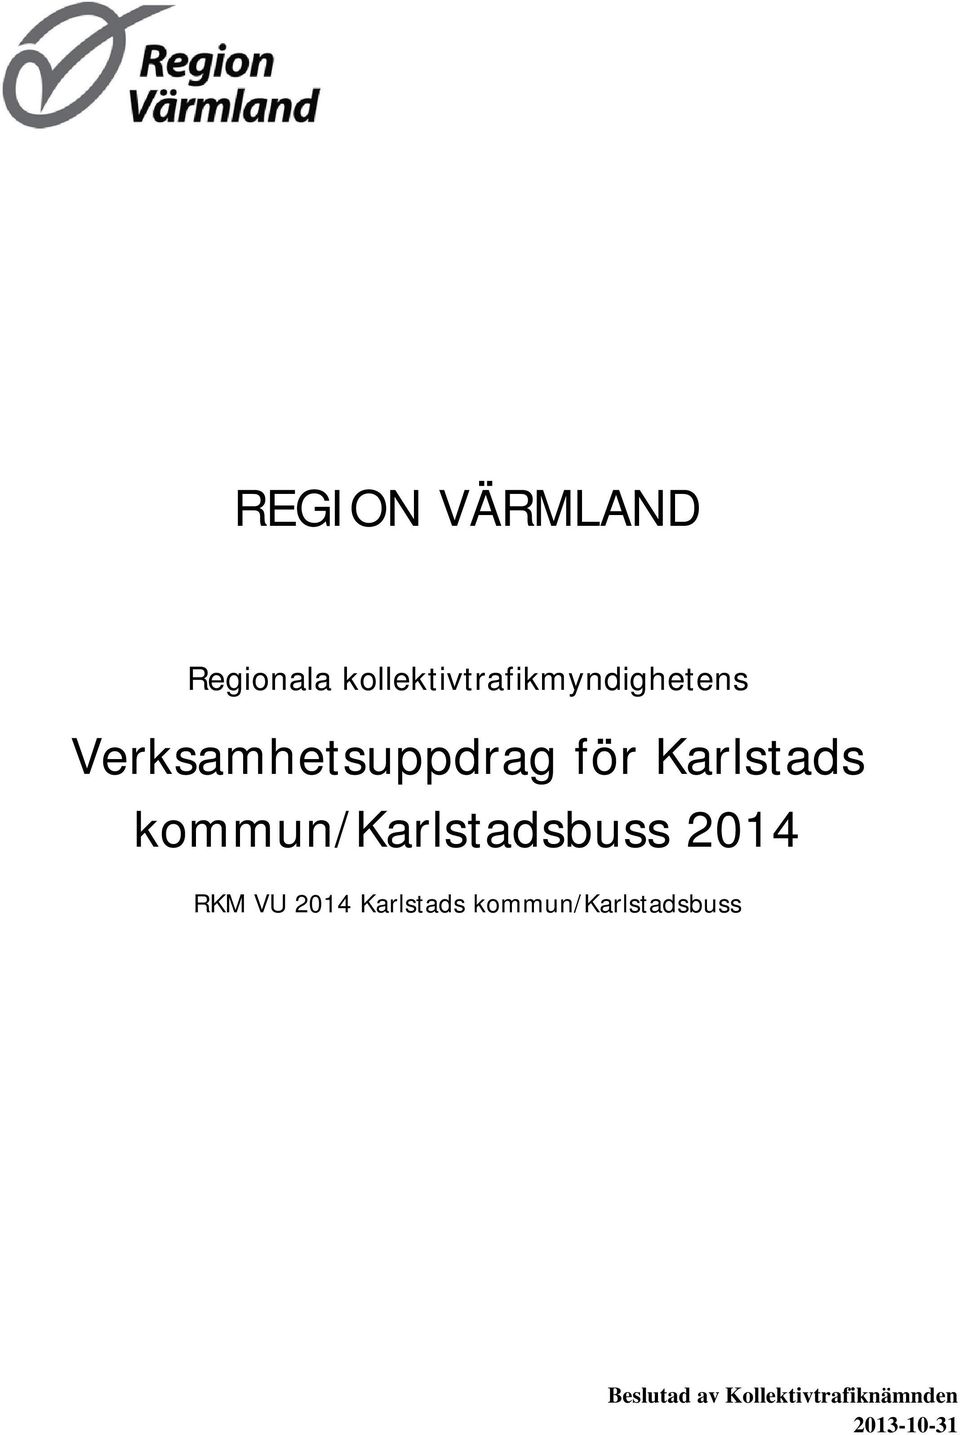 Karlstads kommun/karlstadsbuss 2014 RKM VU 2014